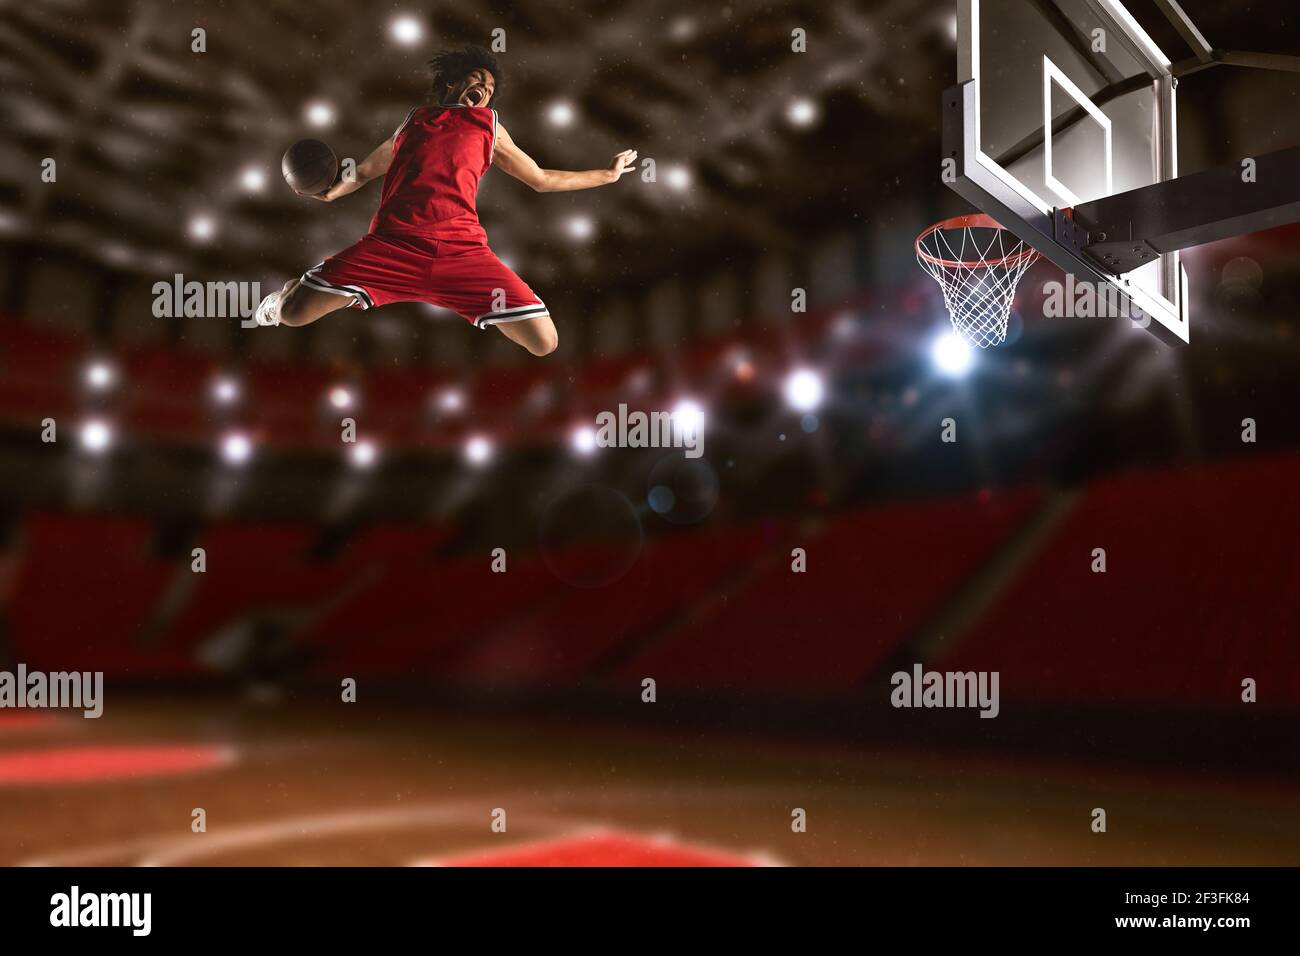 Basketball-Spiel mit einem Hochsprung-Spieler zu machen slam Dunk in den Korb Stockfoto